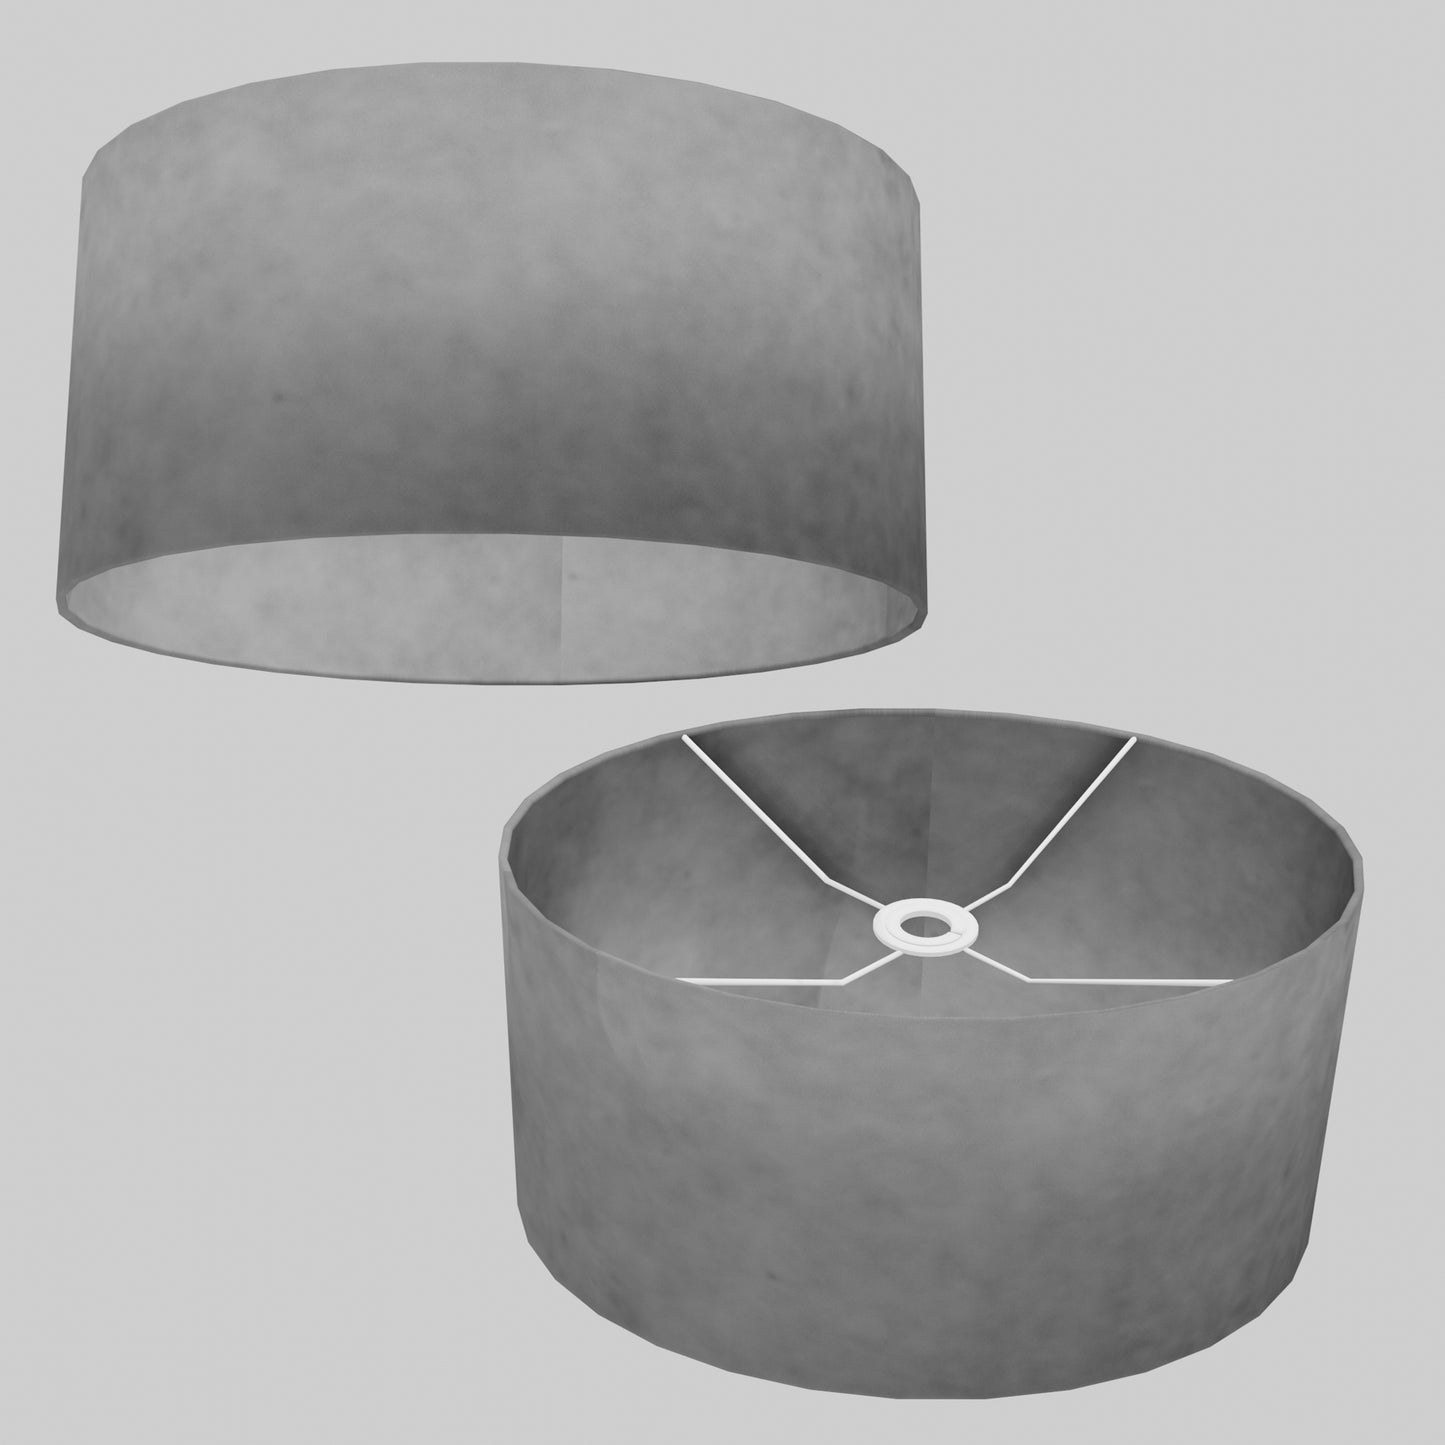 Oval Lamp Shade - P53 - Pewter Grey, 40cm(w) x 20cm(h) x 30cm(d)